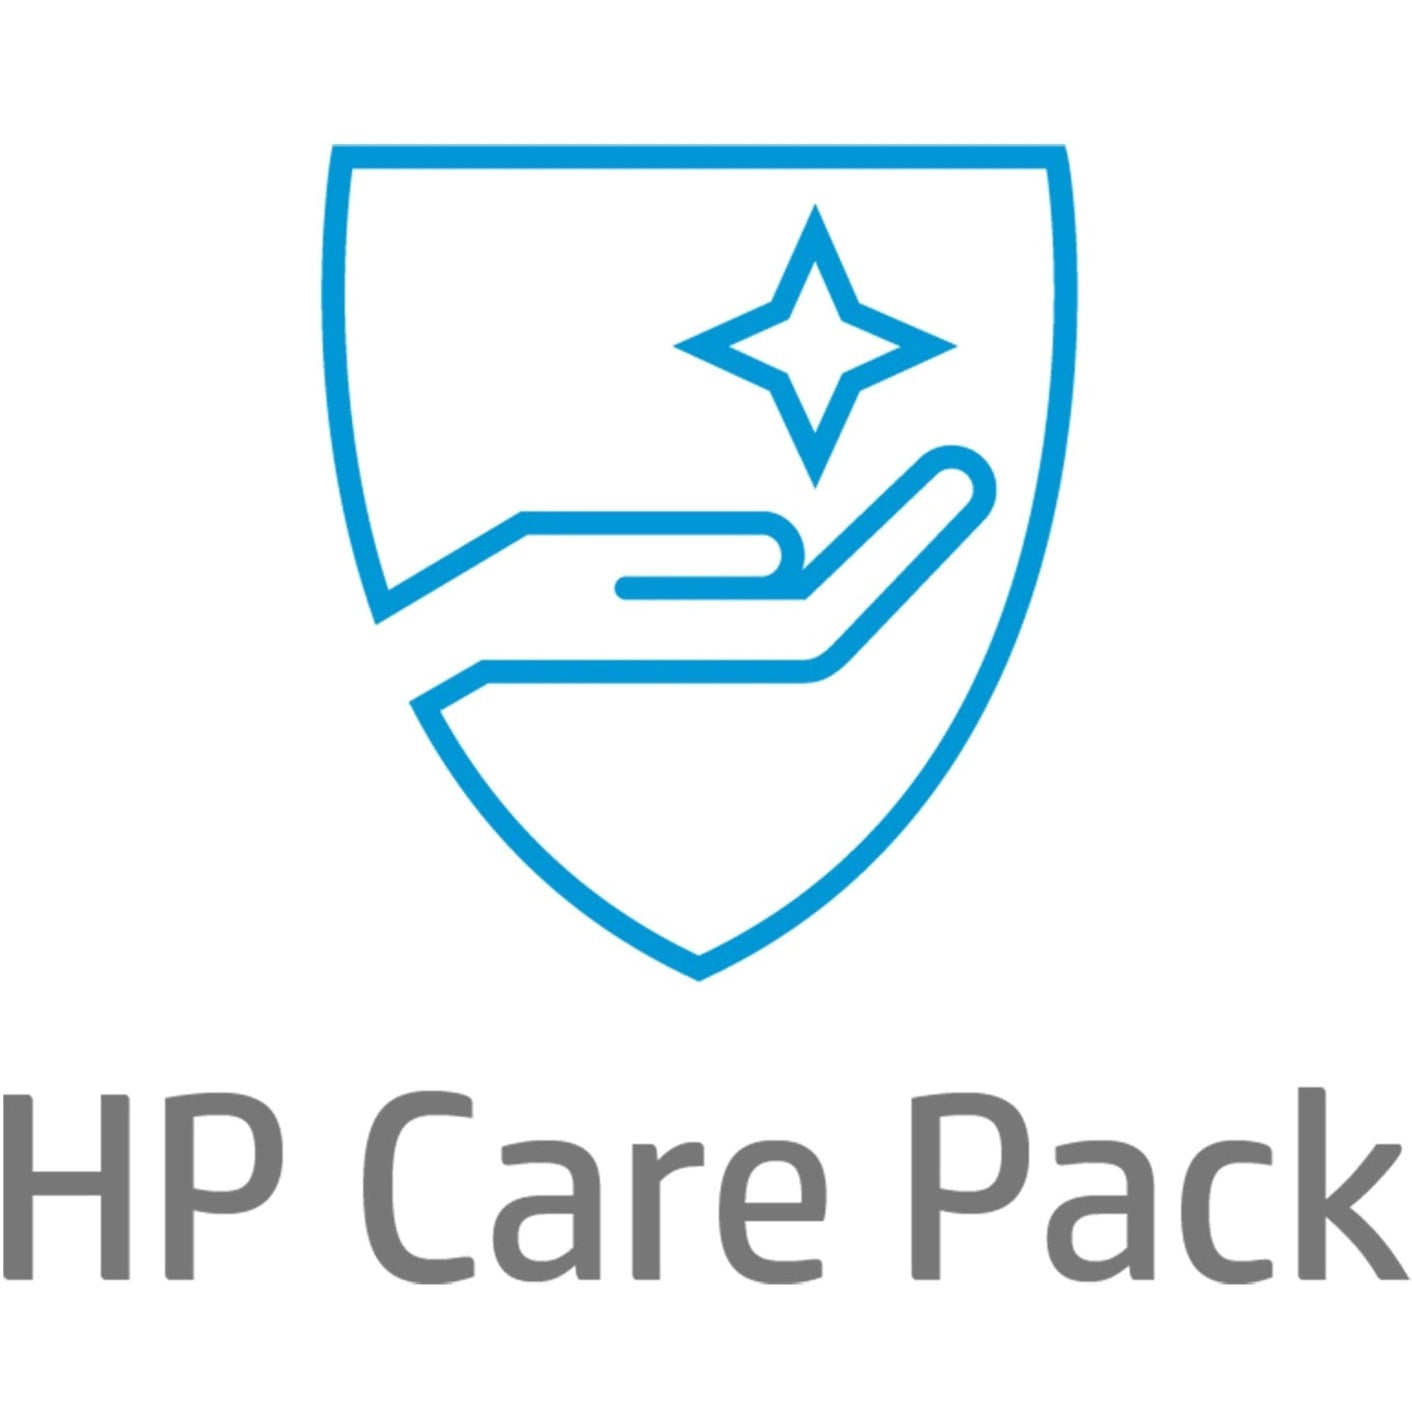 HP Care Pack - 2 Year - Service (U8230E)